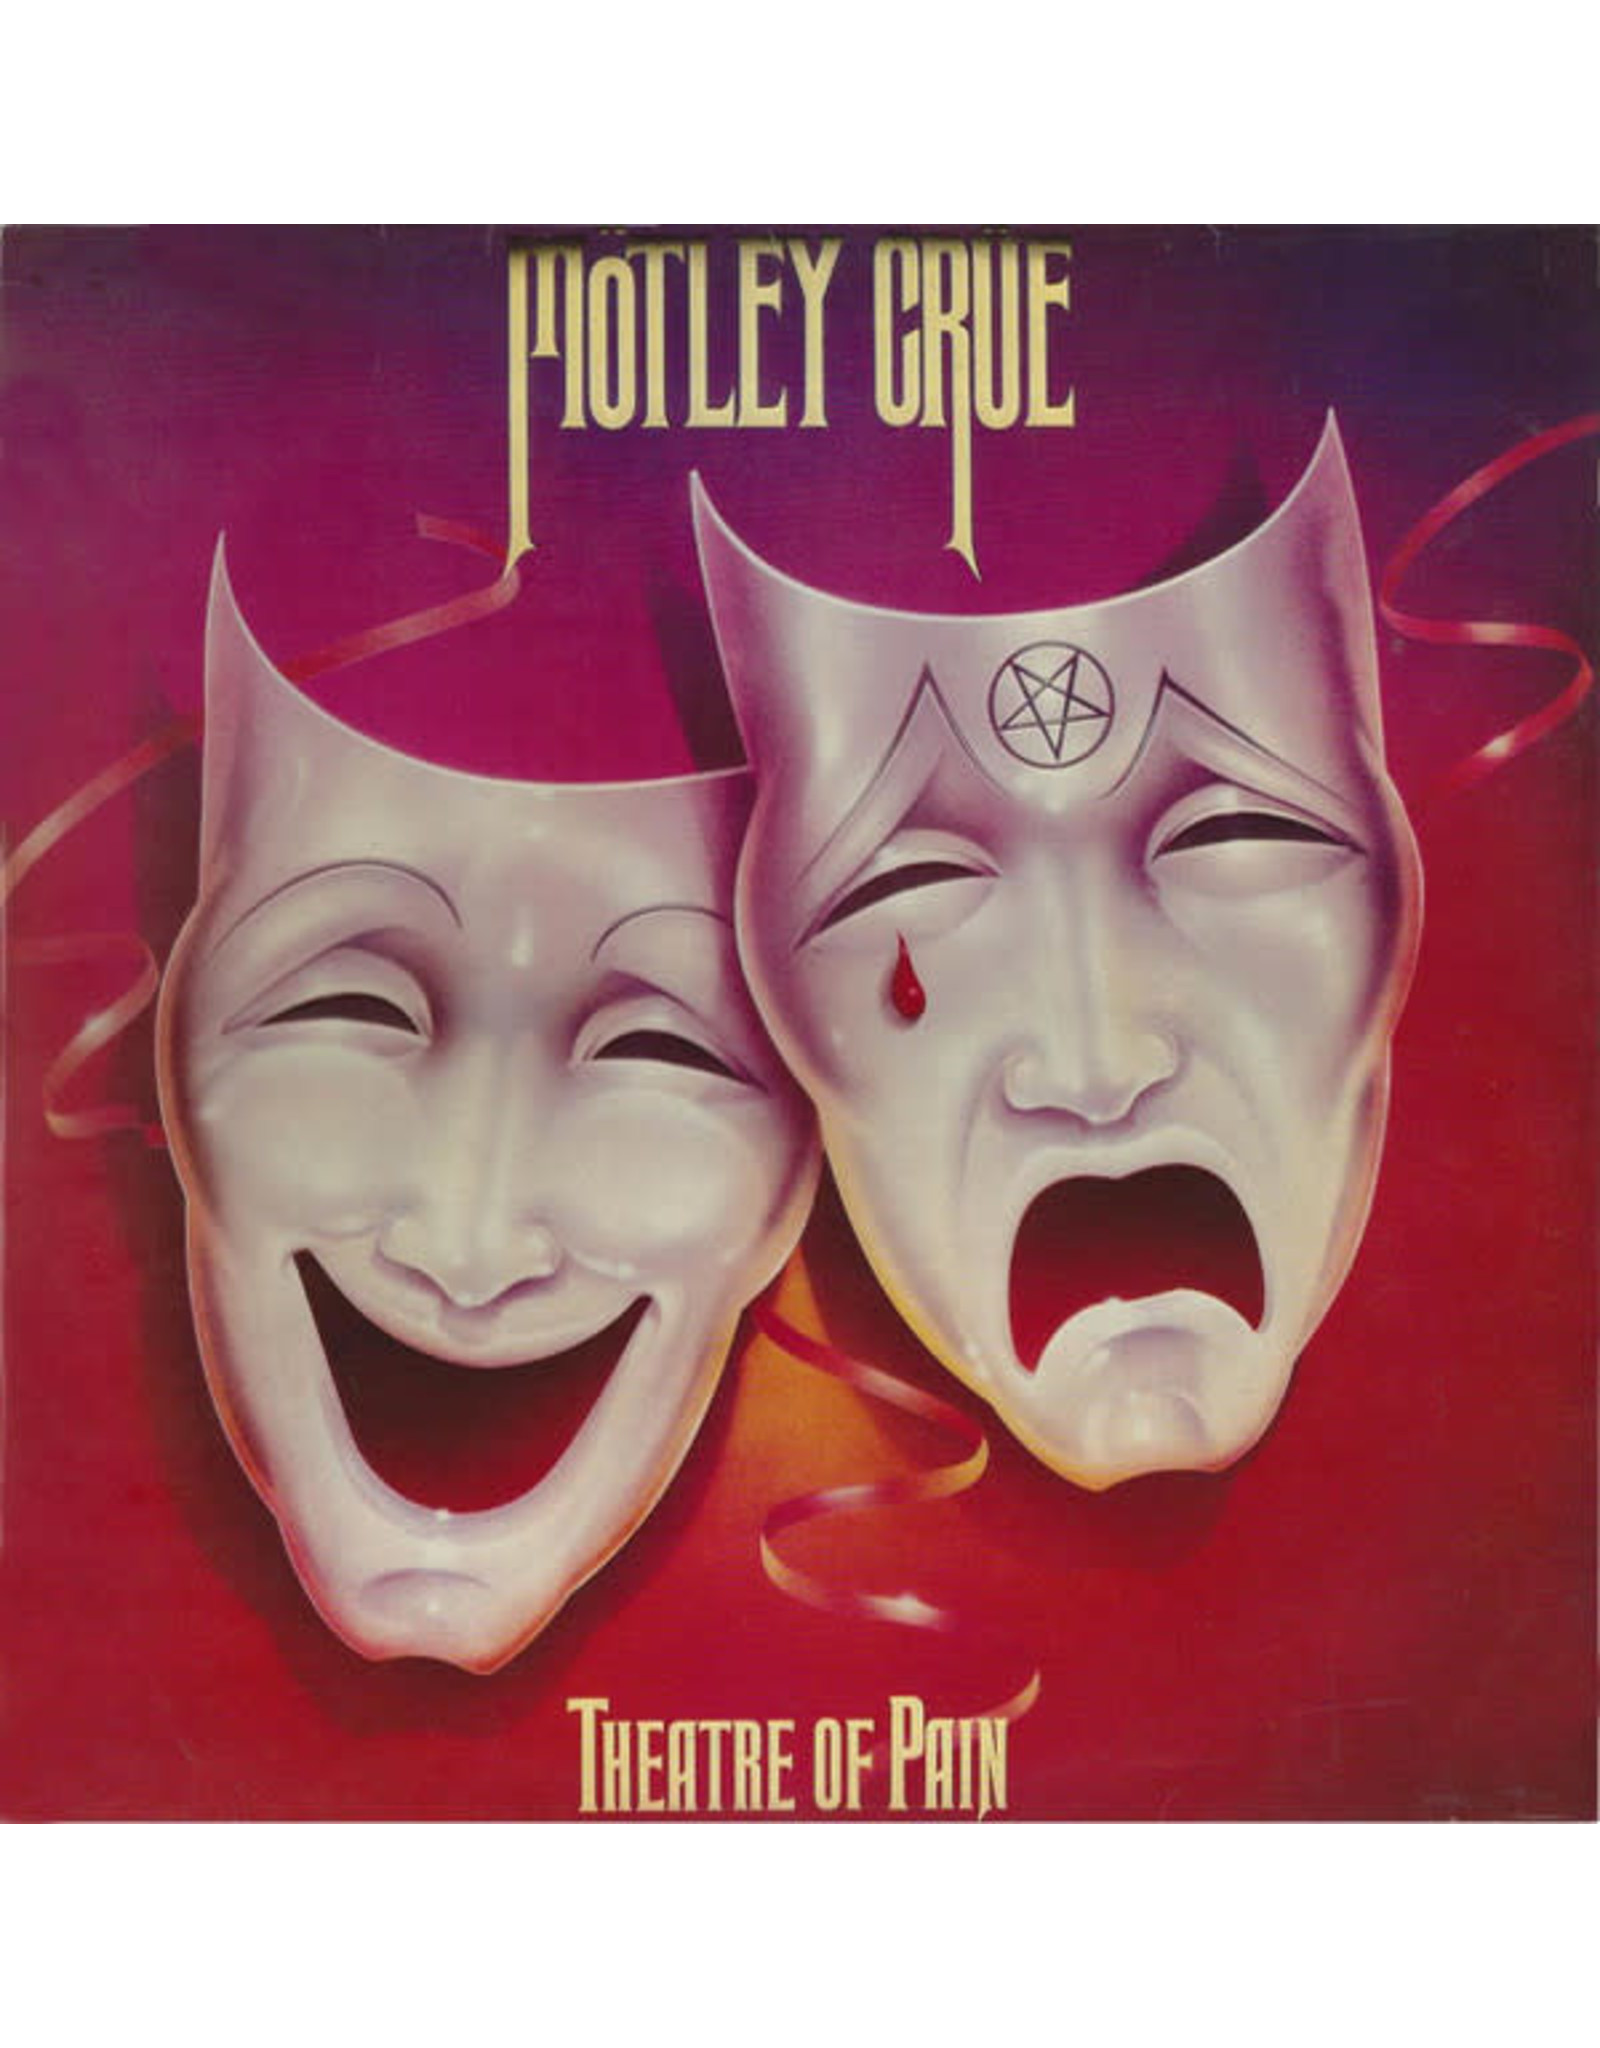 Mötley Crüe - Theatre of Pain LP